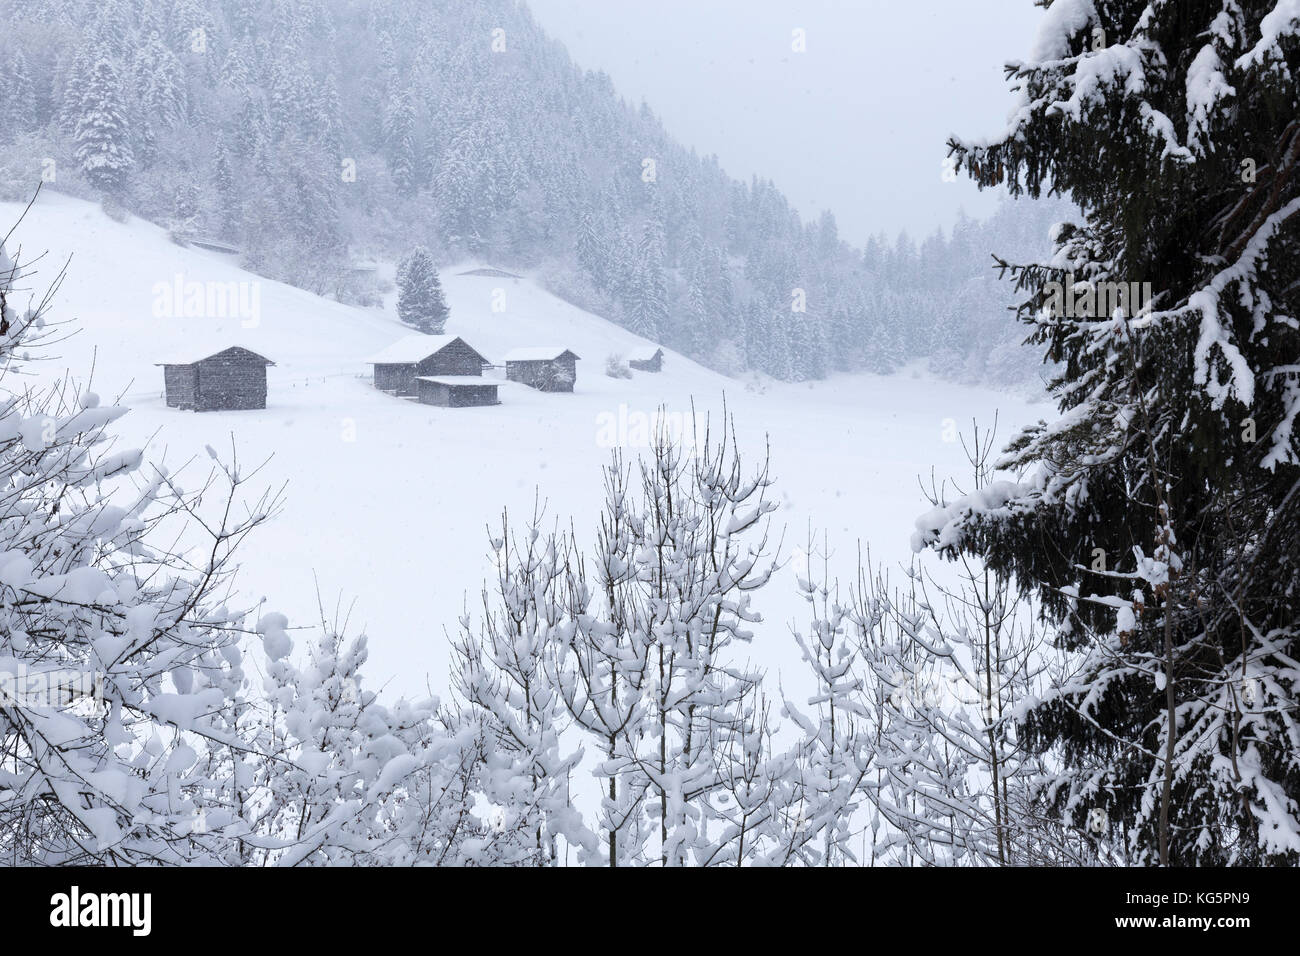 Huttes pendant une forte chute de neige. Versam, Safiental, Surselva, Graubunden, Suisse, Europe Banque D'Images